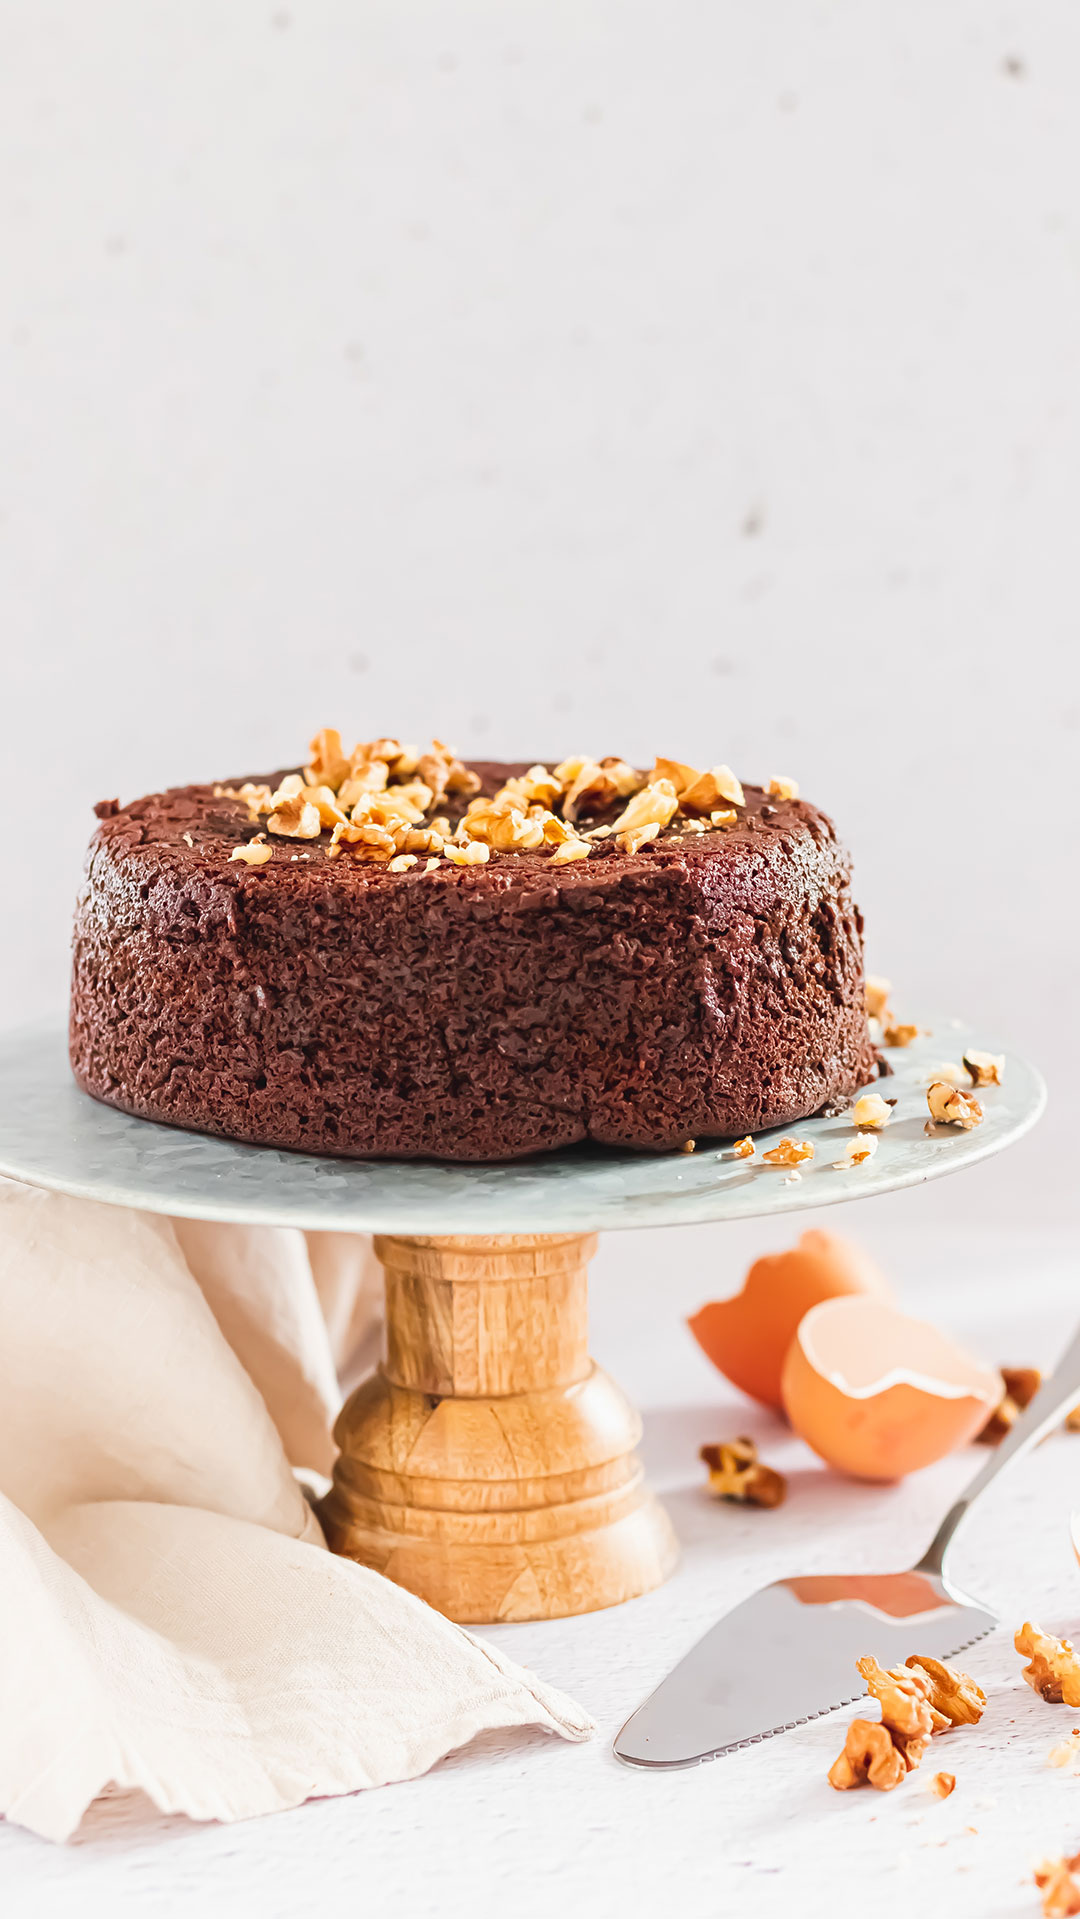 recette healthy - Gâteau au chocolat et amande cuit vapeur